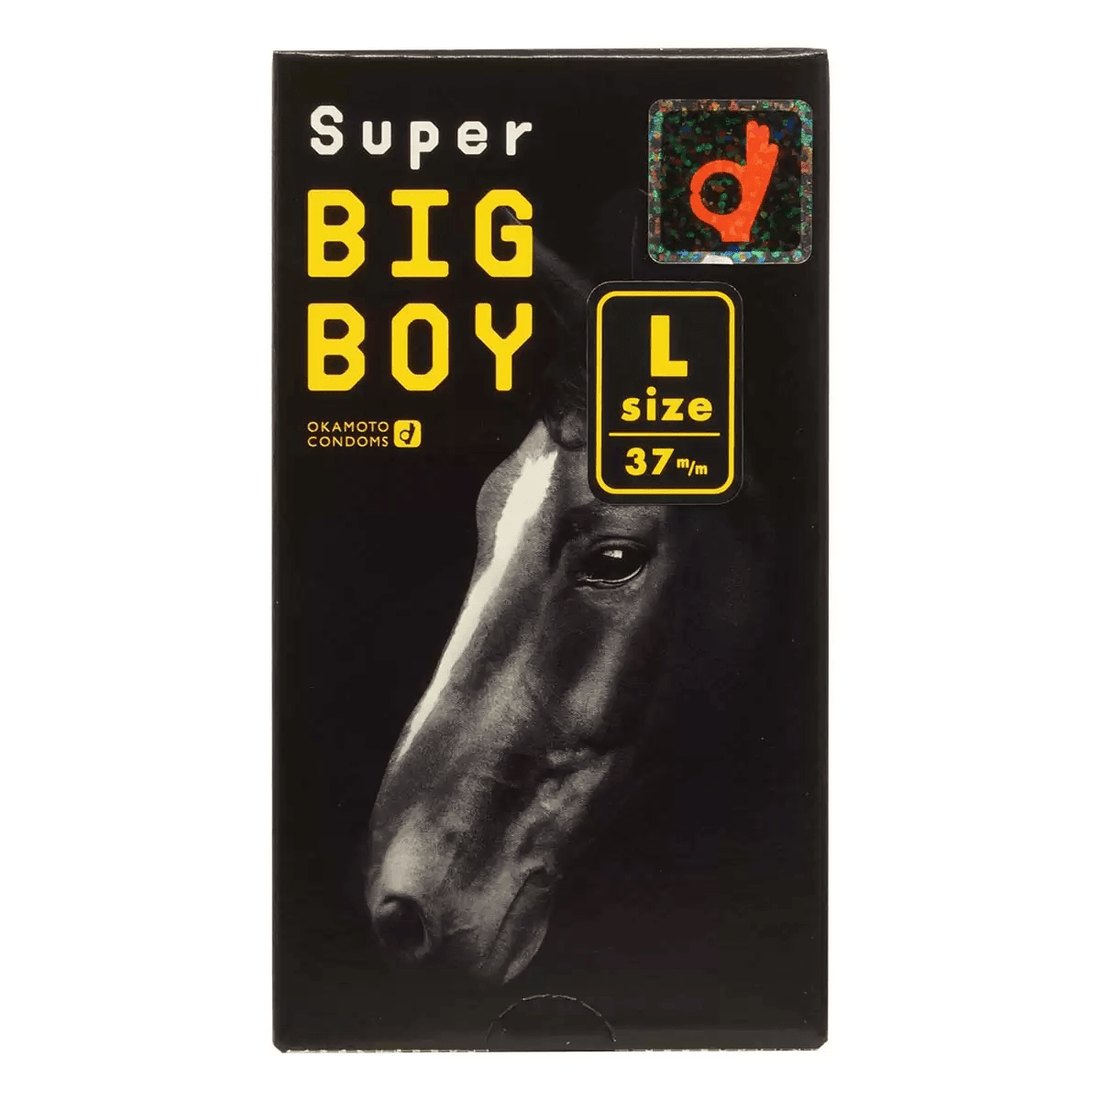 日本冈本Okamoto Super Big Boy - L 安全套12只装 - Premium 避孕套 from 冈本OKAMOTO - Just $19.99! Shop now at blissboxmall